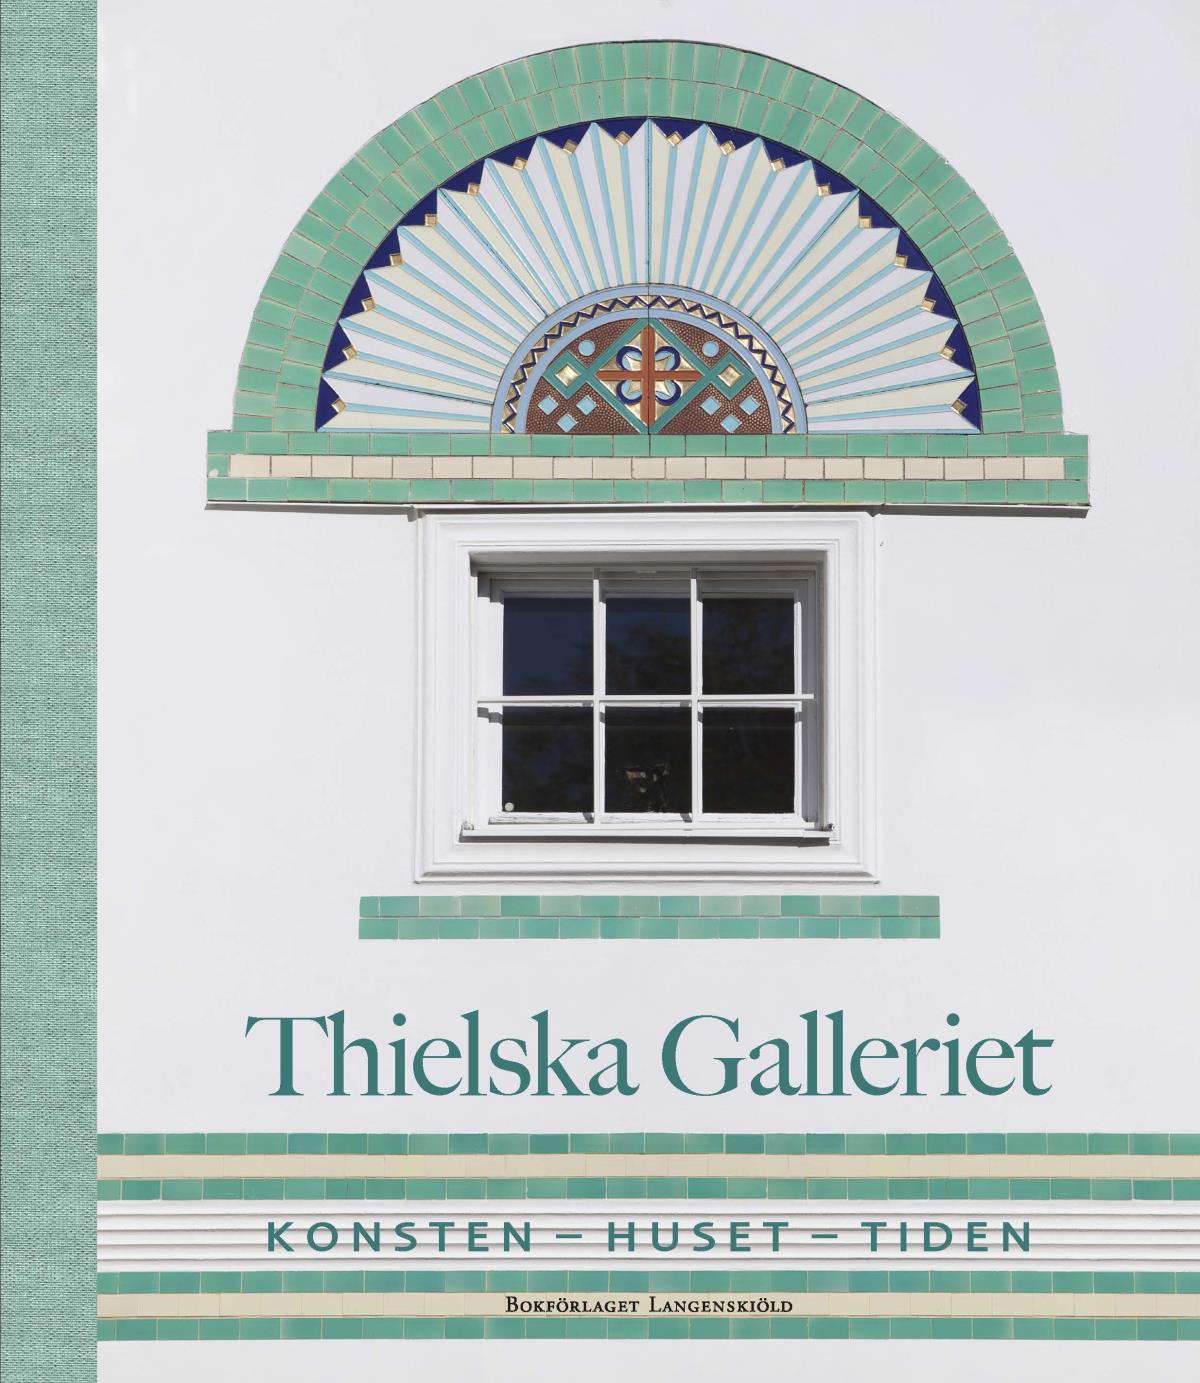 Thielska Galleriet - Konsten - Huset - Tiden